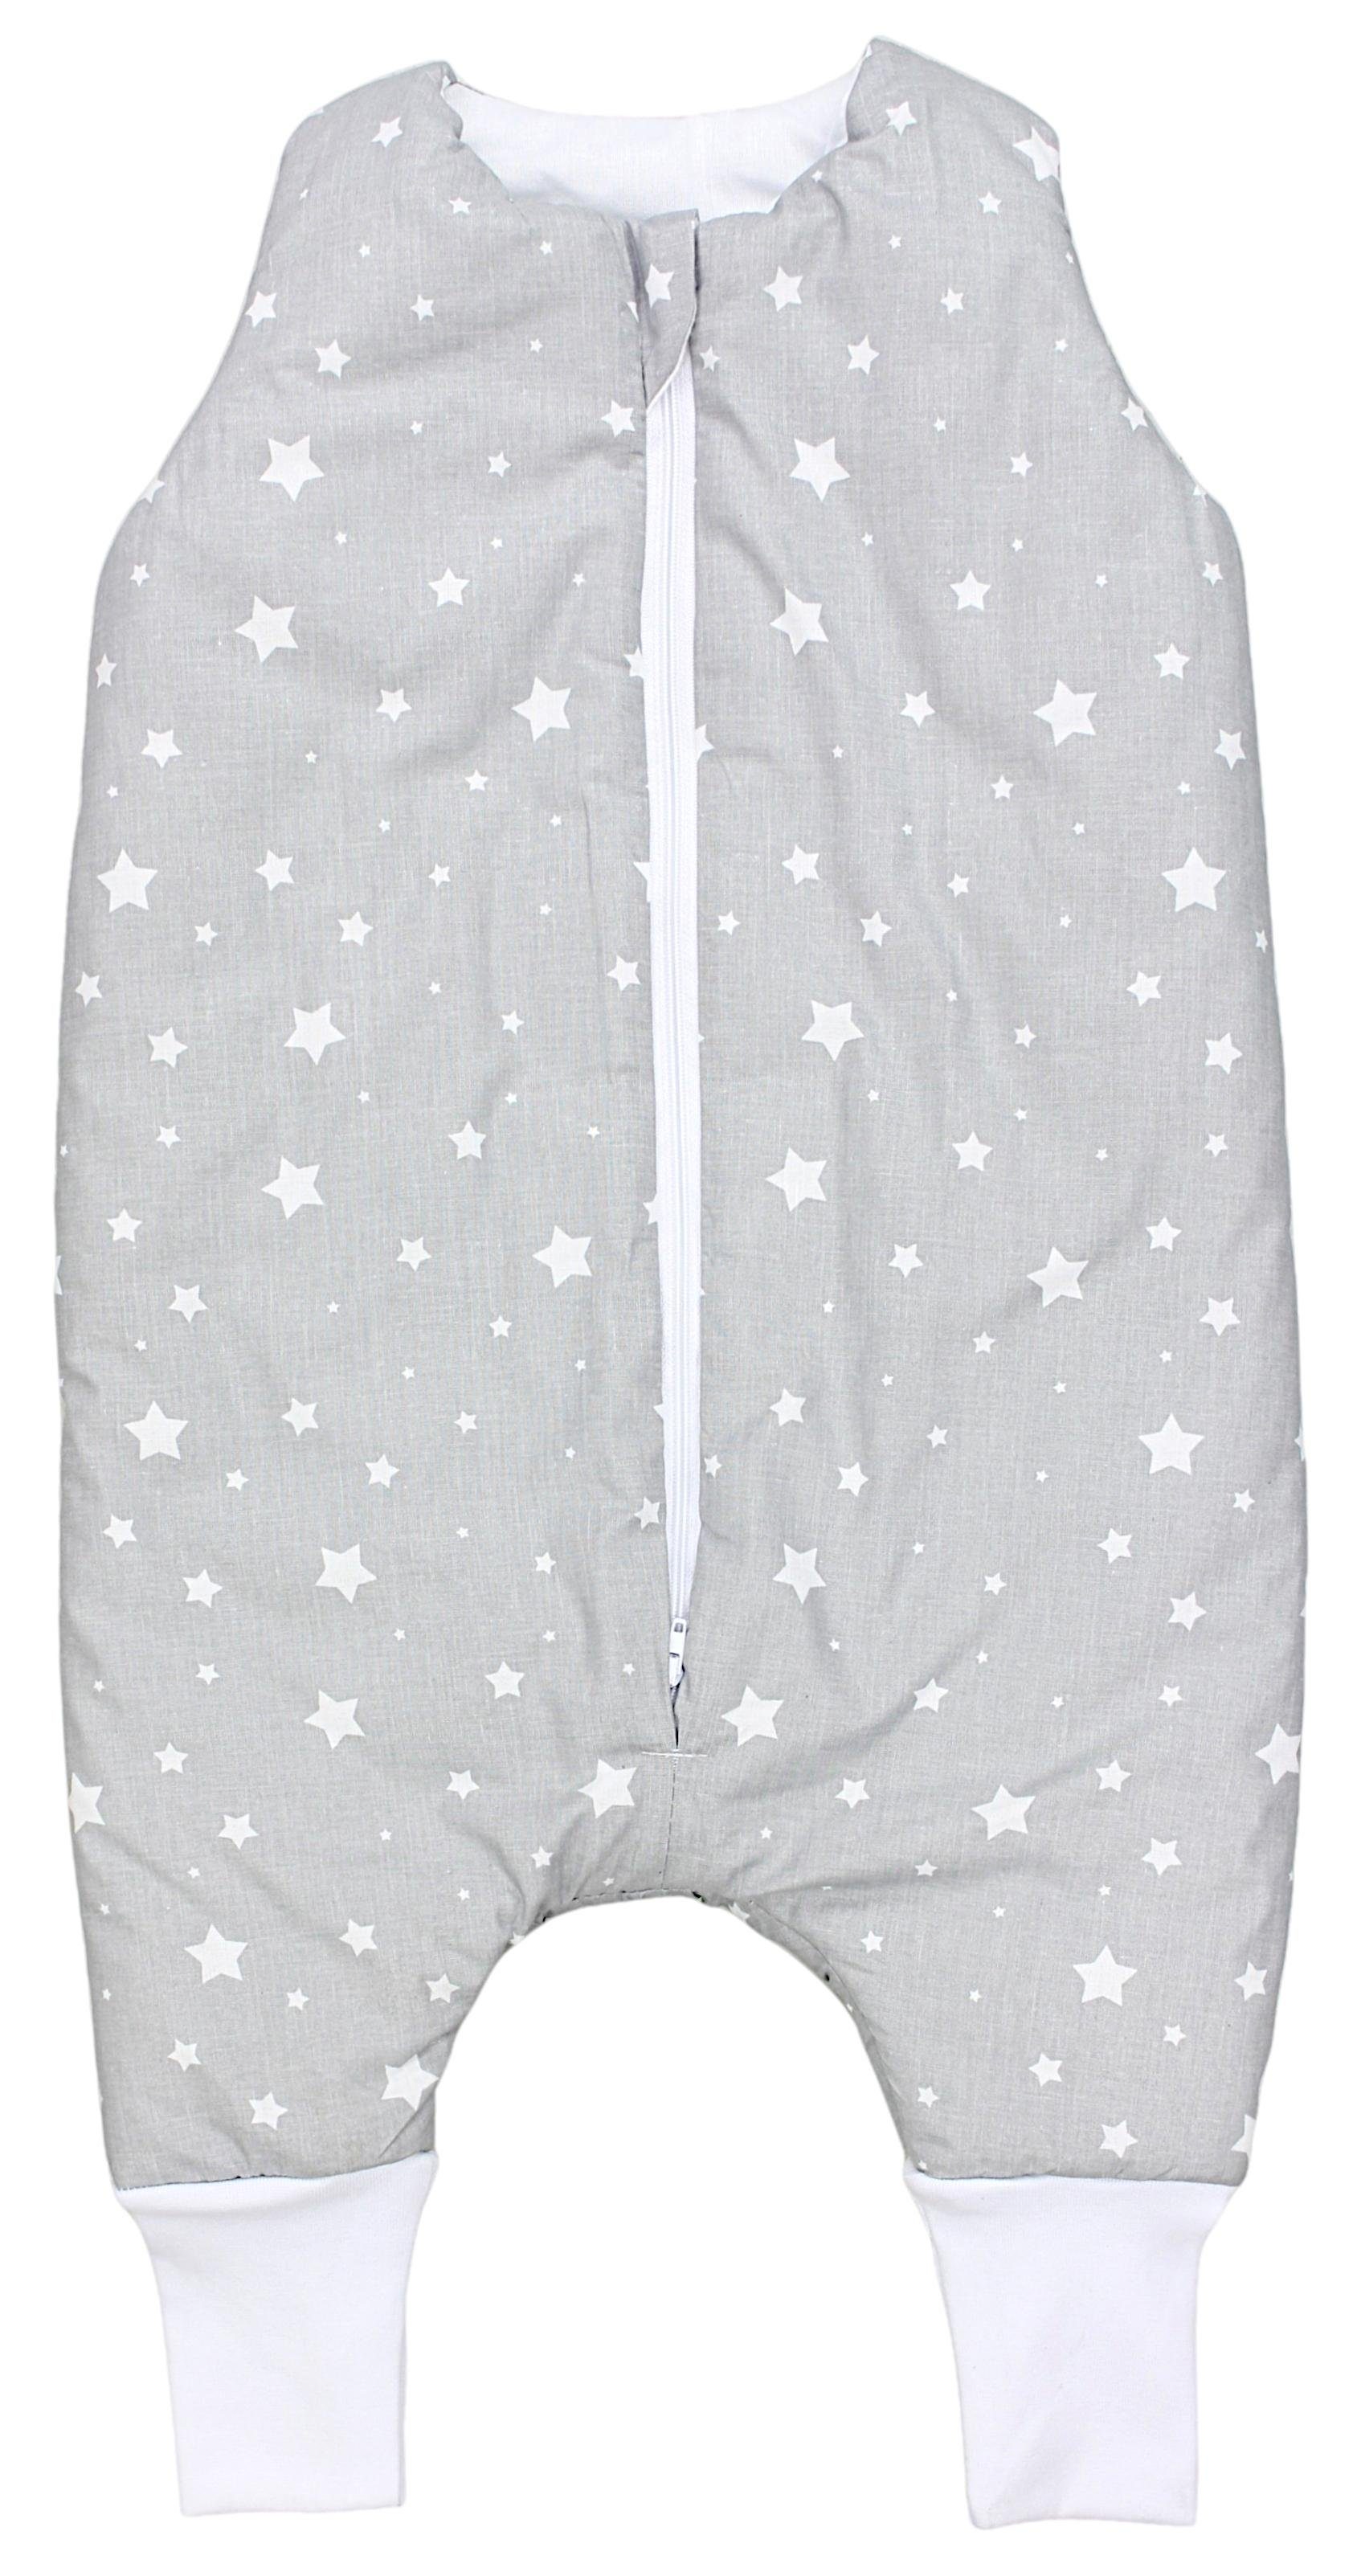 TupTam Babyschlafsack mit Beinen Winterschlafsack OEKO-TEX zertifiziert 2.5 TOG Sterne Weiß / Grau